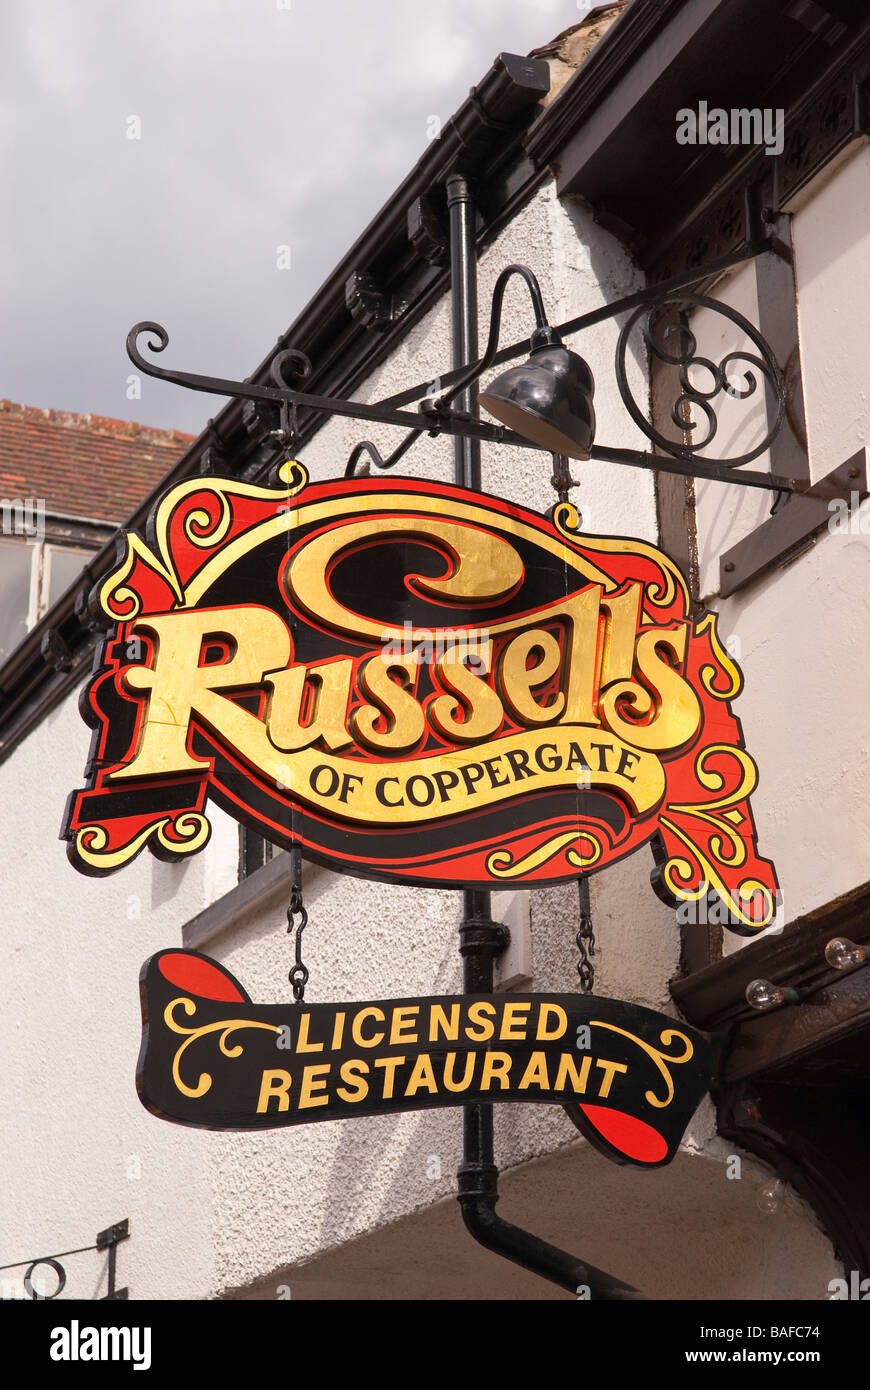 Russells Coppergate lizenzierte Restaurant Zeichen in York, Yorkshire, Großbritannien Stockfoto